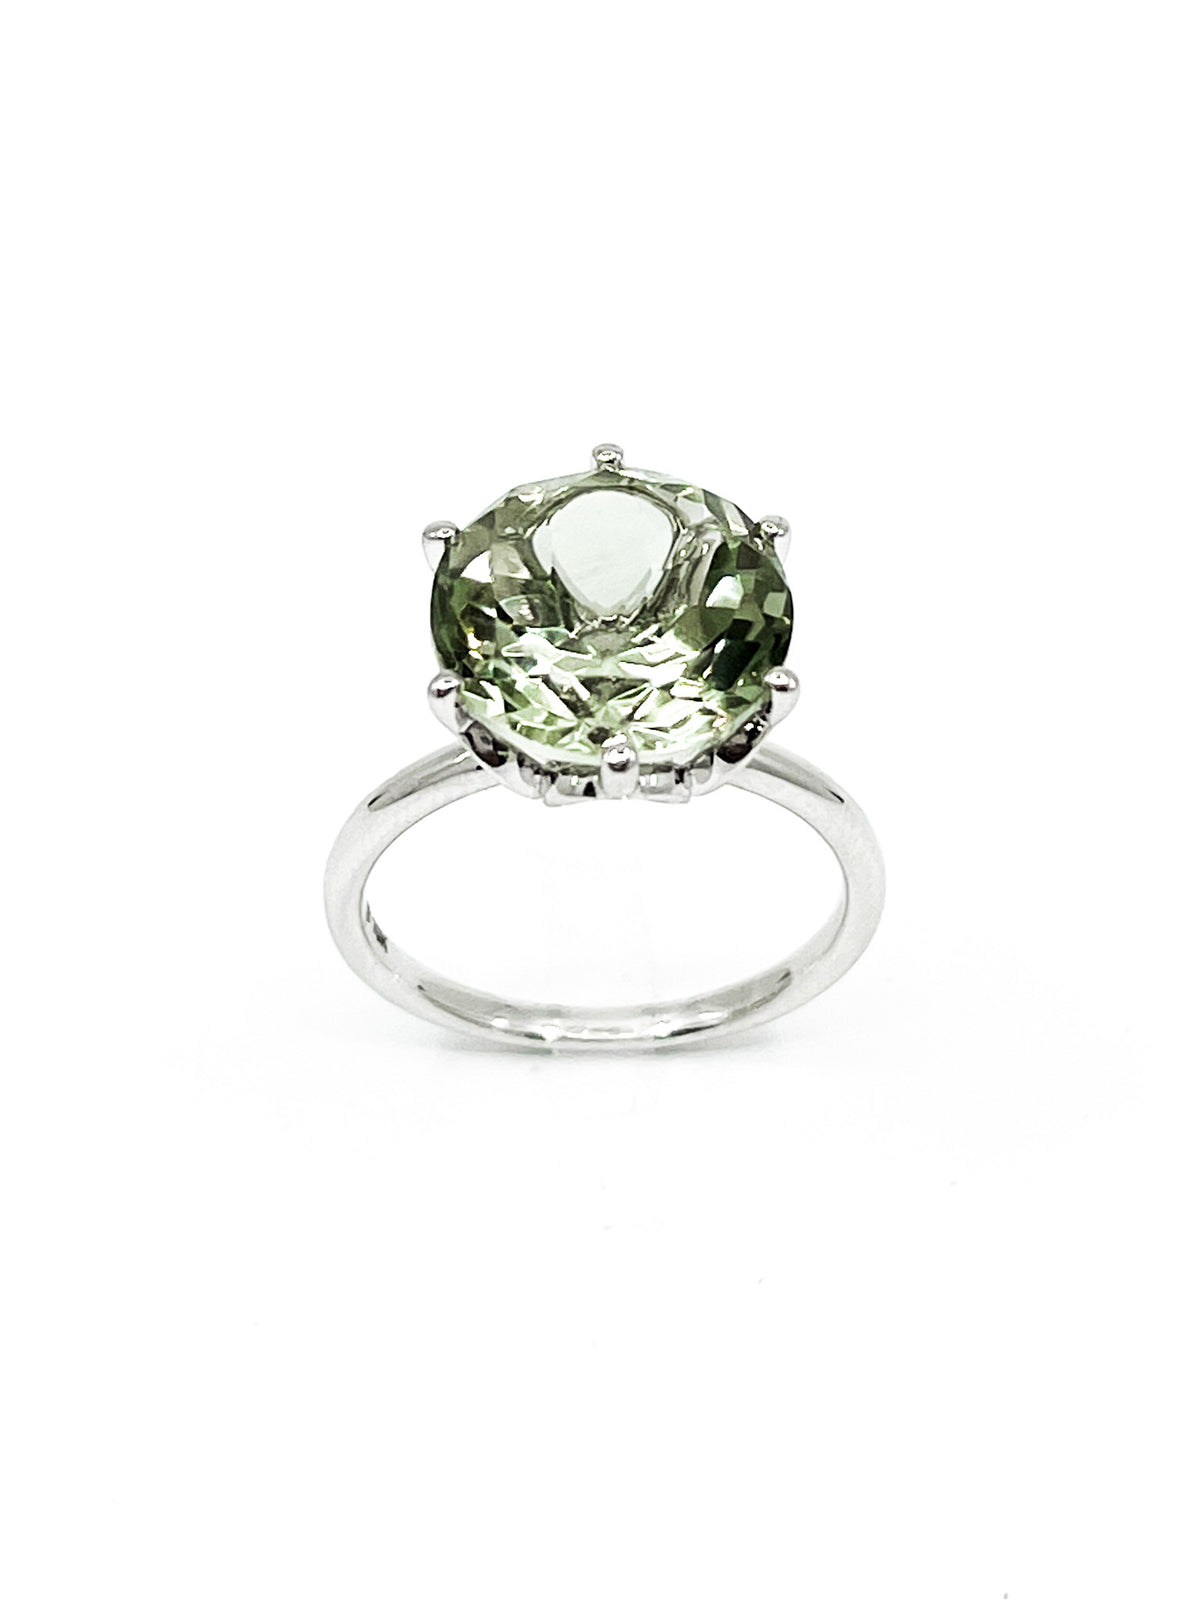 10K White Gold 5 carat Genuine Prasiolite (Green Amethyst) Ring, size 6.5